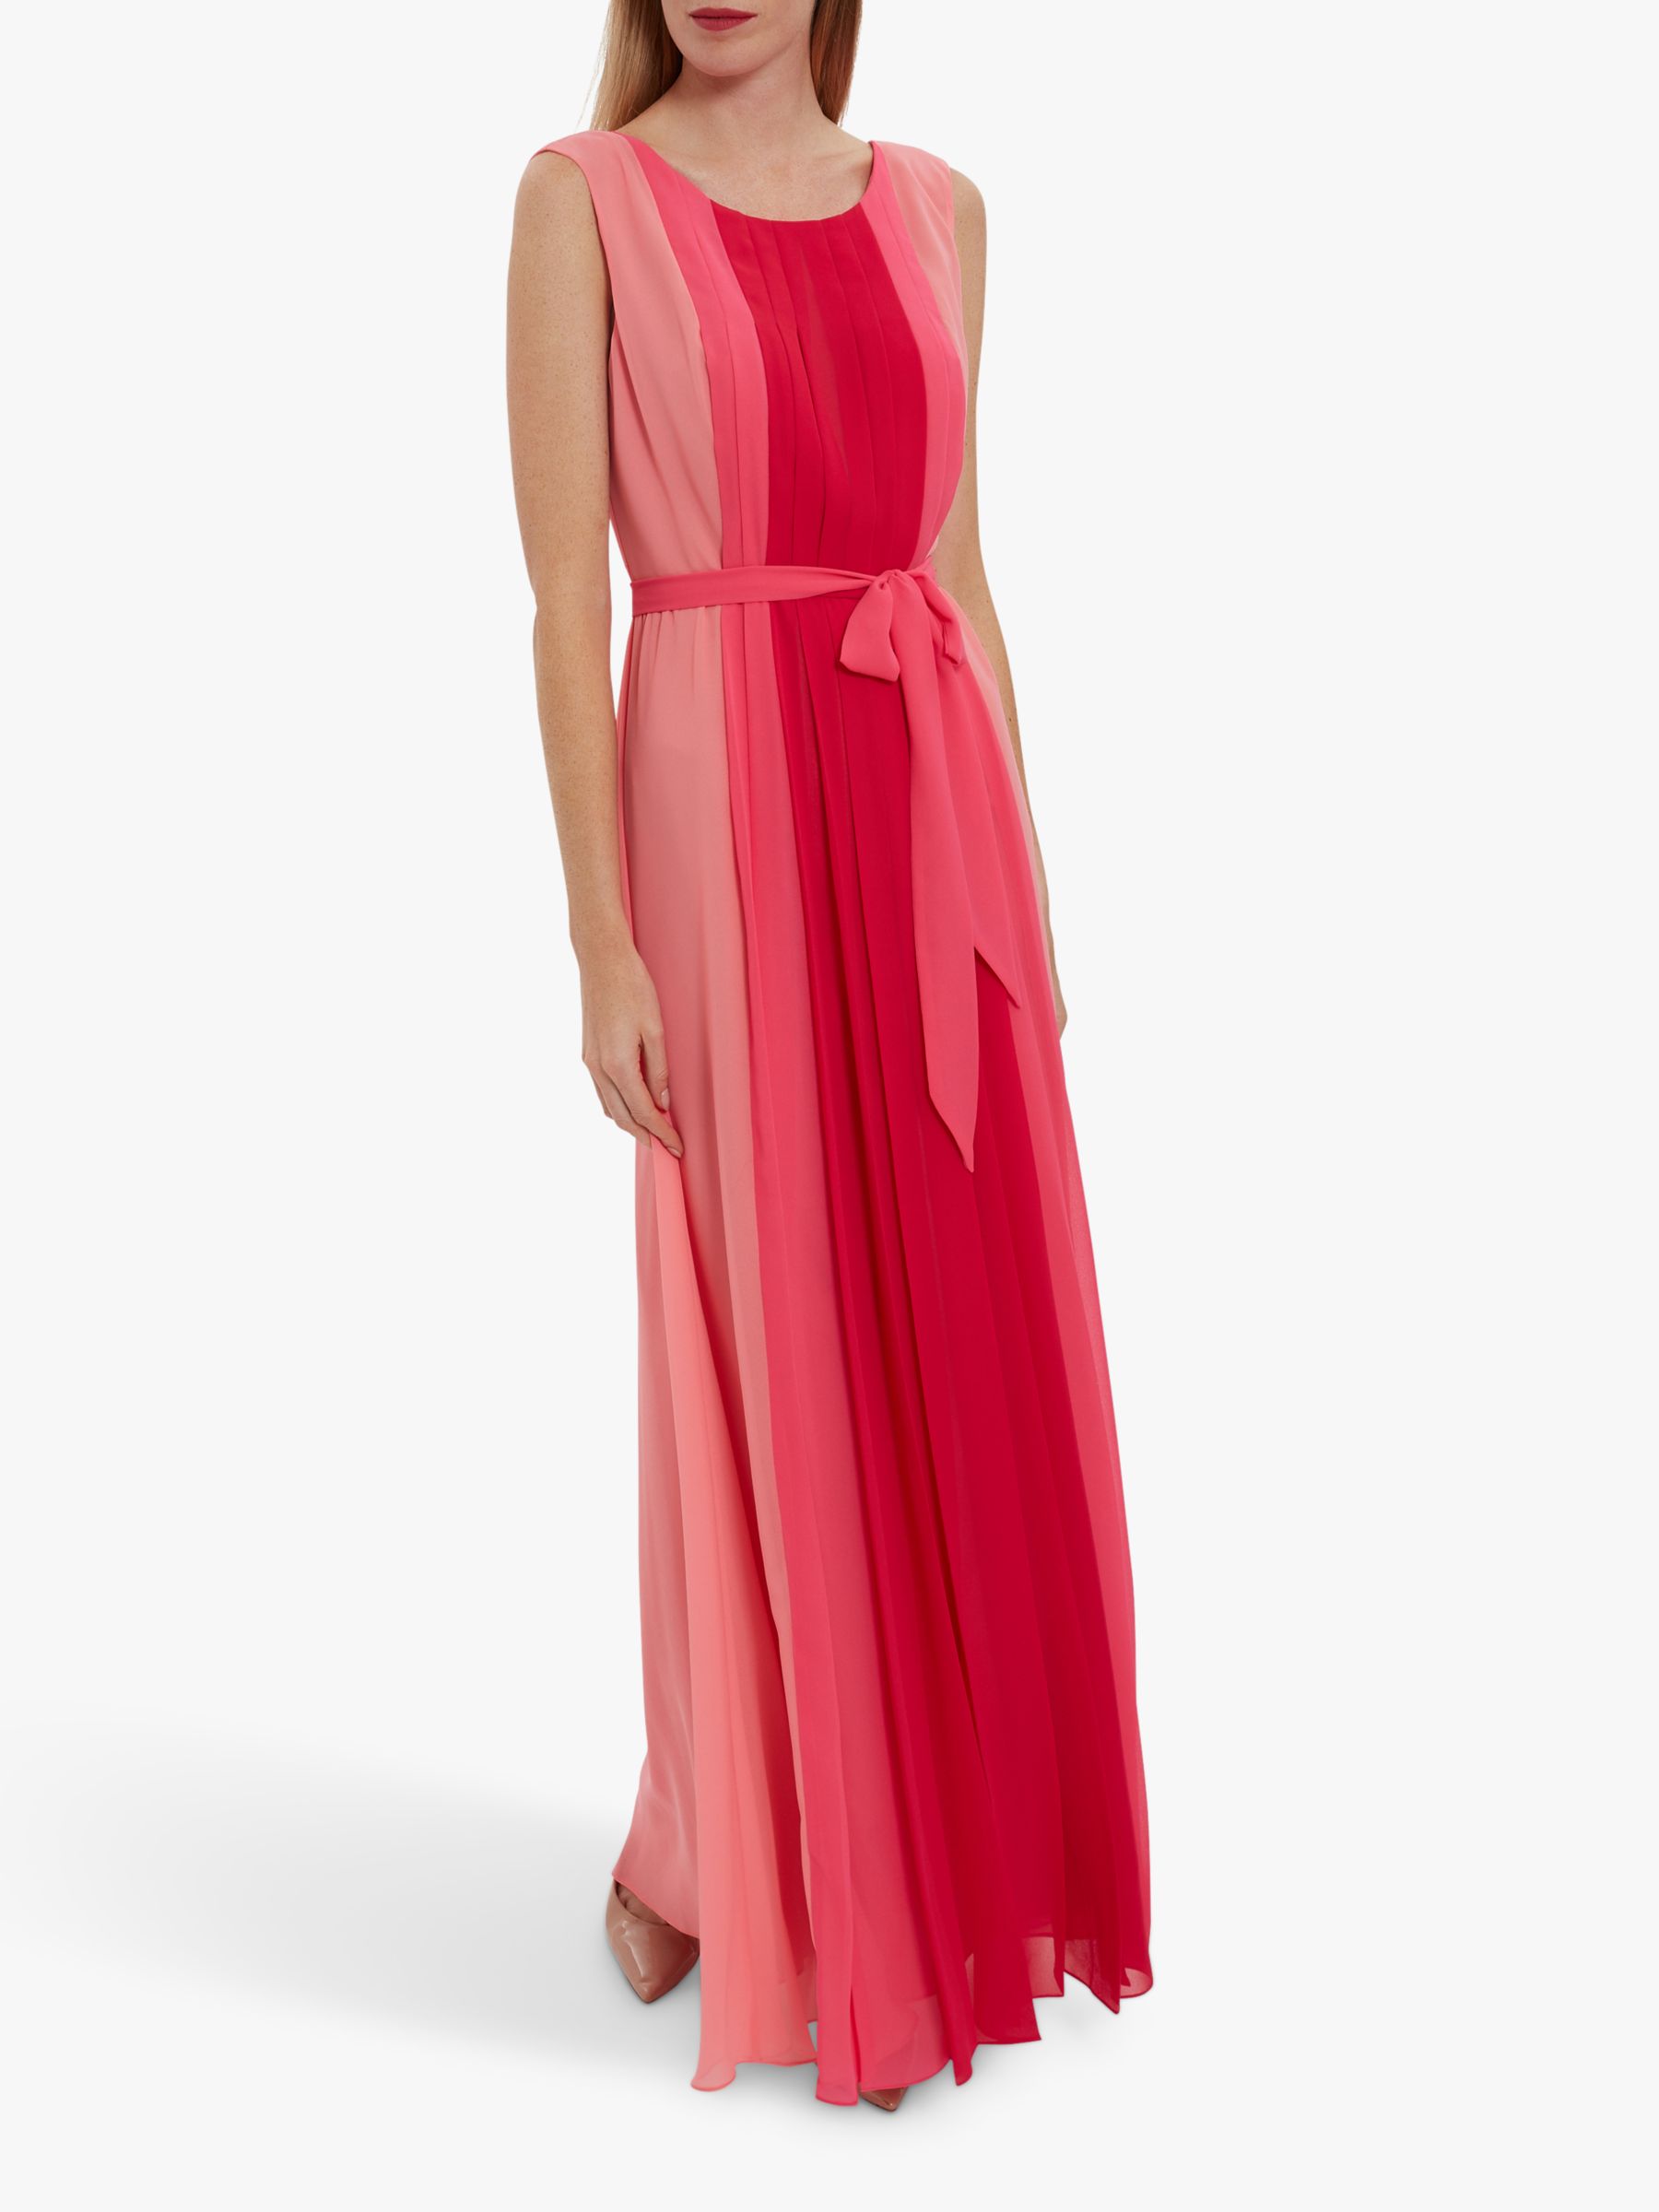 Gina Bacconi Janada Chiffon Maxi Dress, Hot Pink/Multi, 10